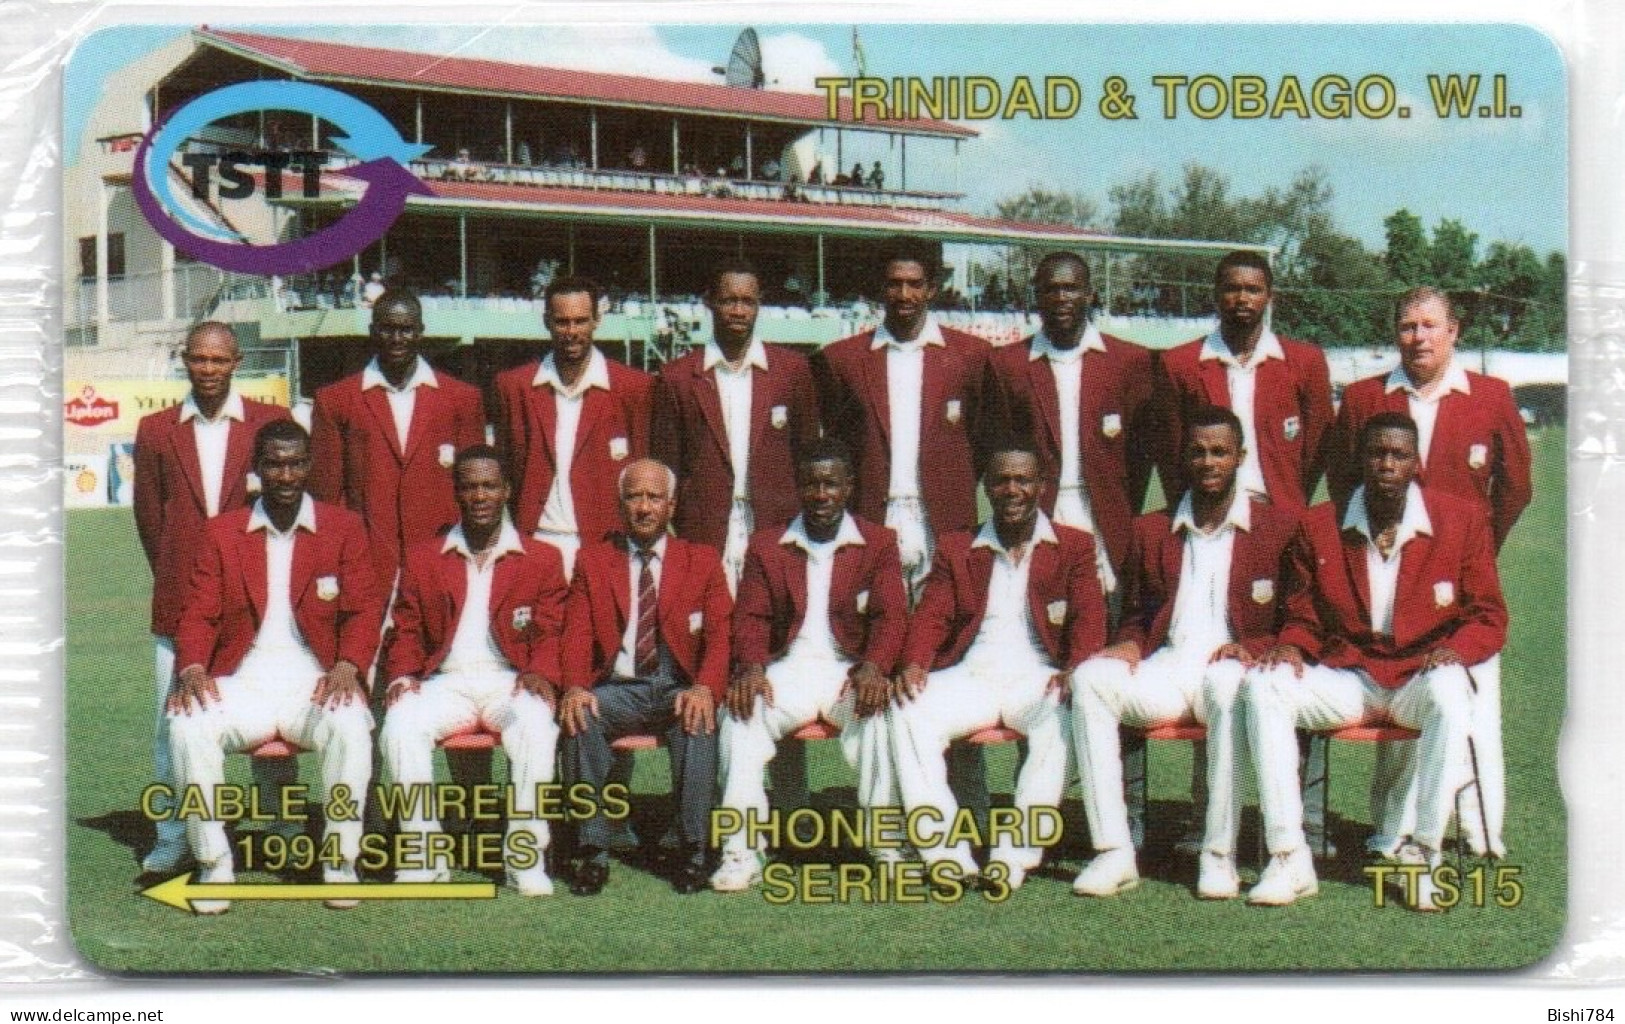 Trinidad & Tobago - C&W 1994 Series - 8CTTC - Trinité & Tobago